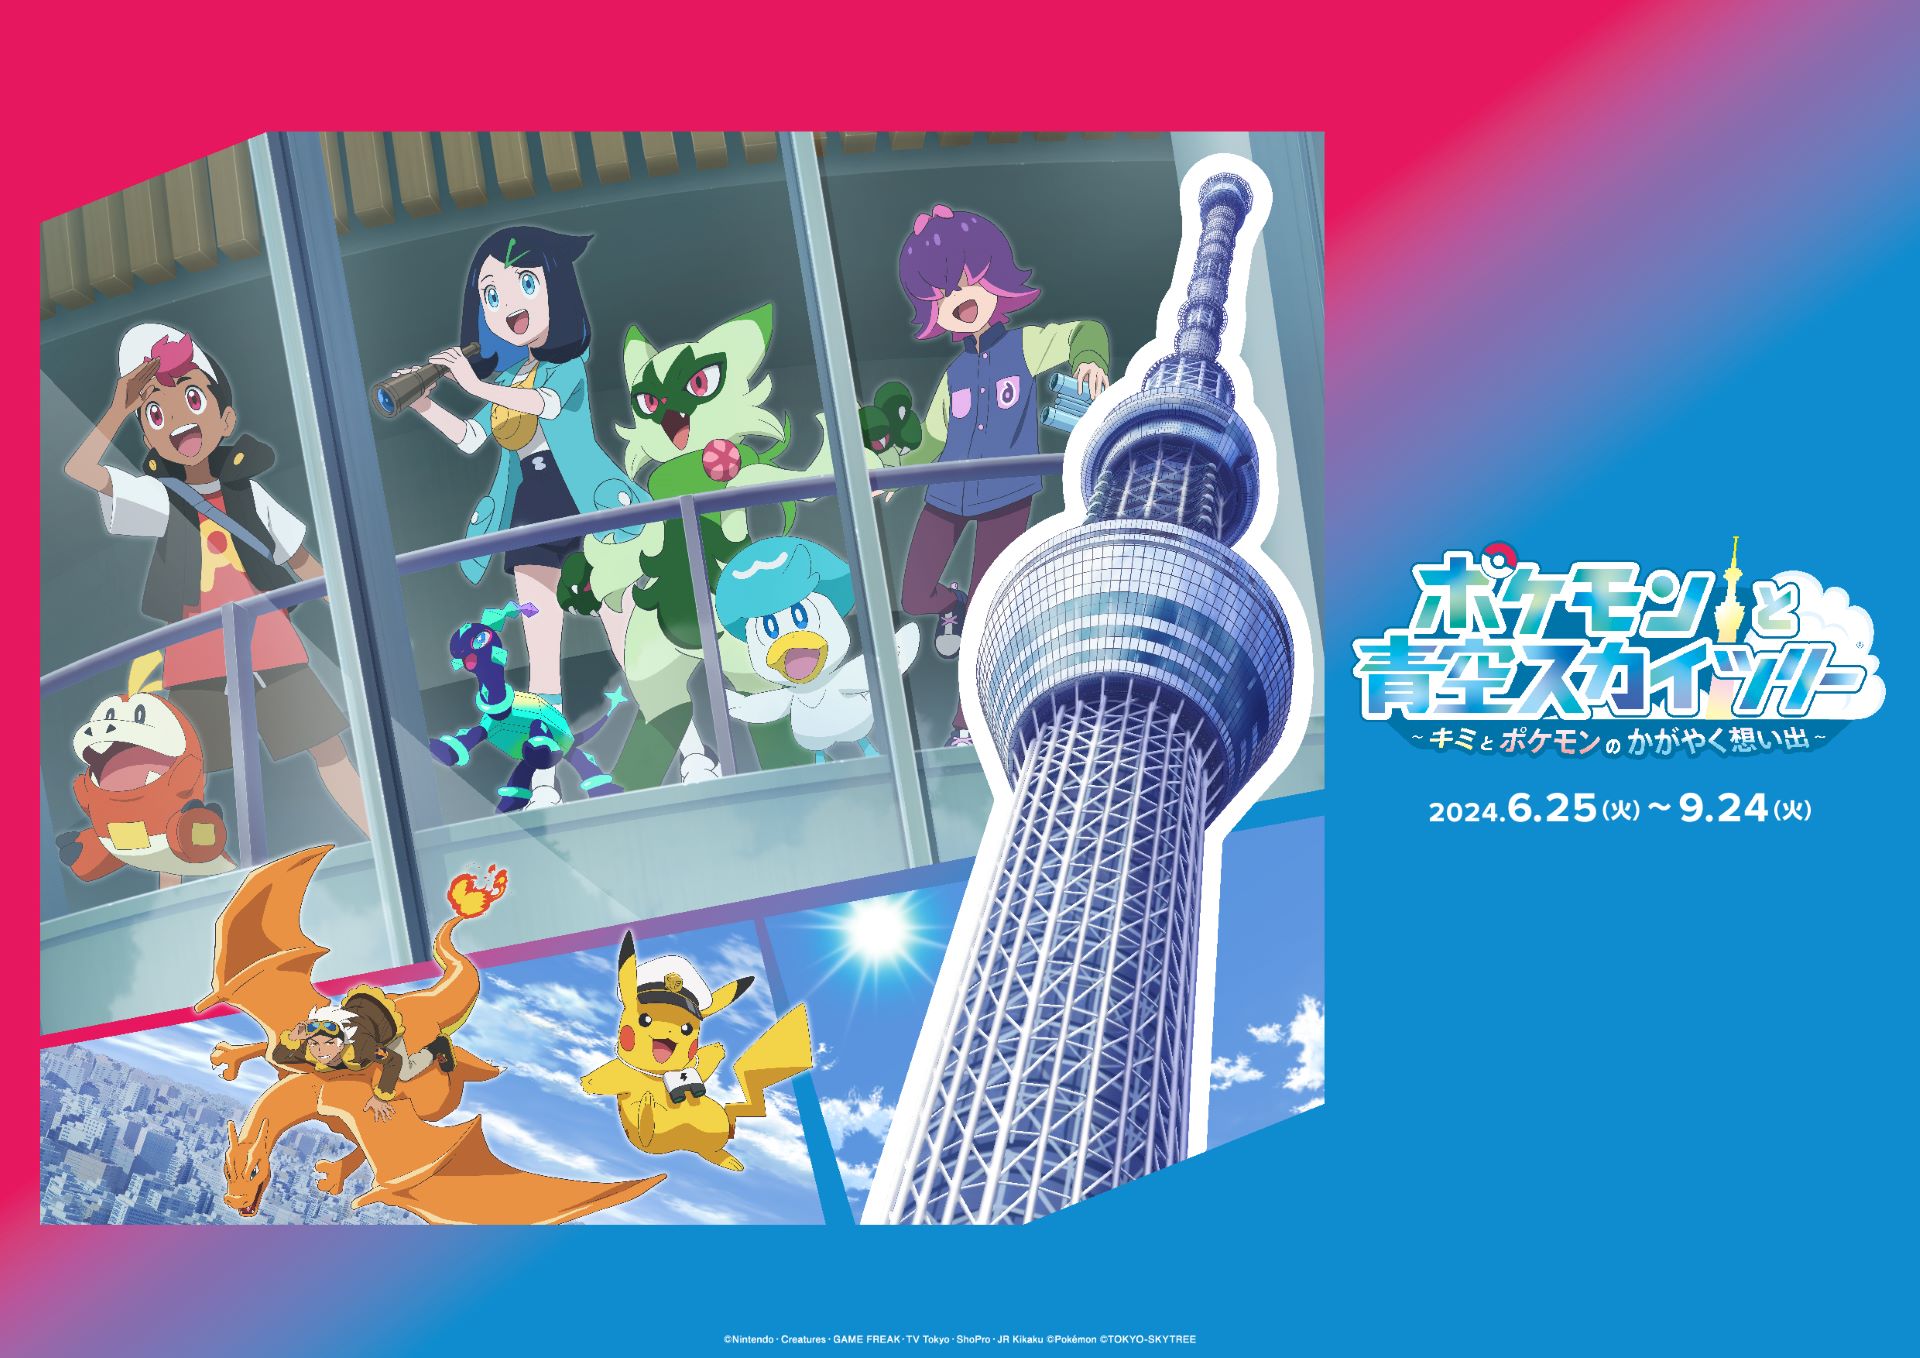 ข่าวภาษาอังกฤษ - TOKYO SKYTREE, TV Anime Pokemon to Hold 1st Joint Event -- "Pokemon Horizons: The Series 'POKEMON in TOKYO SKYTREE'" from June 25 to September 24, 2024